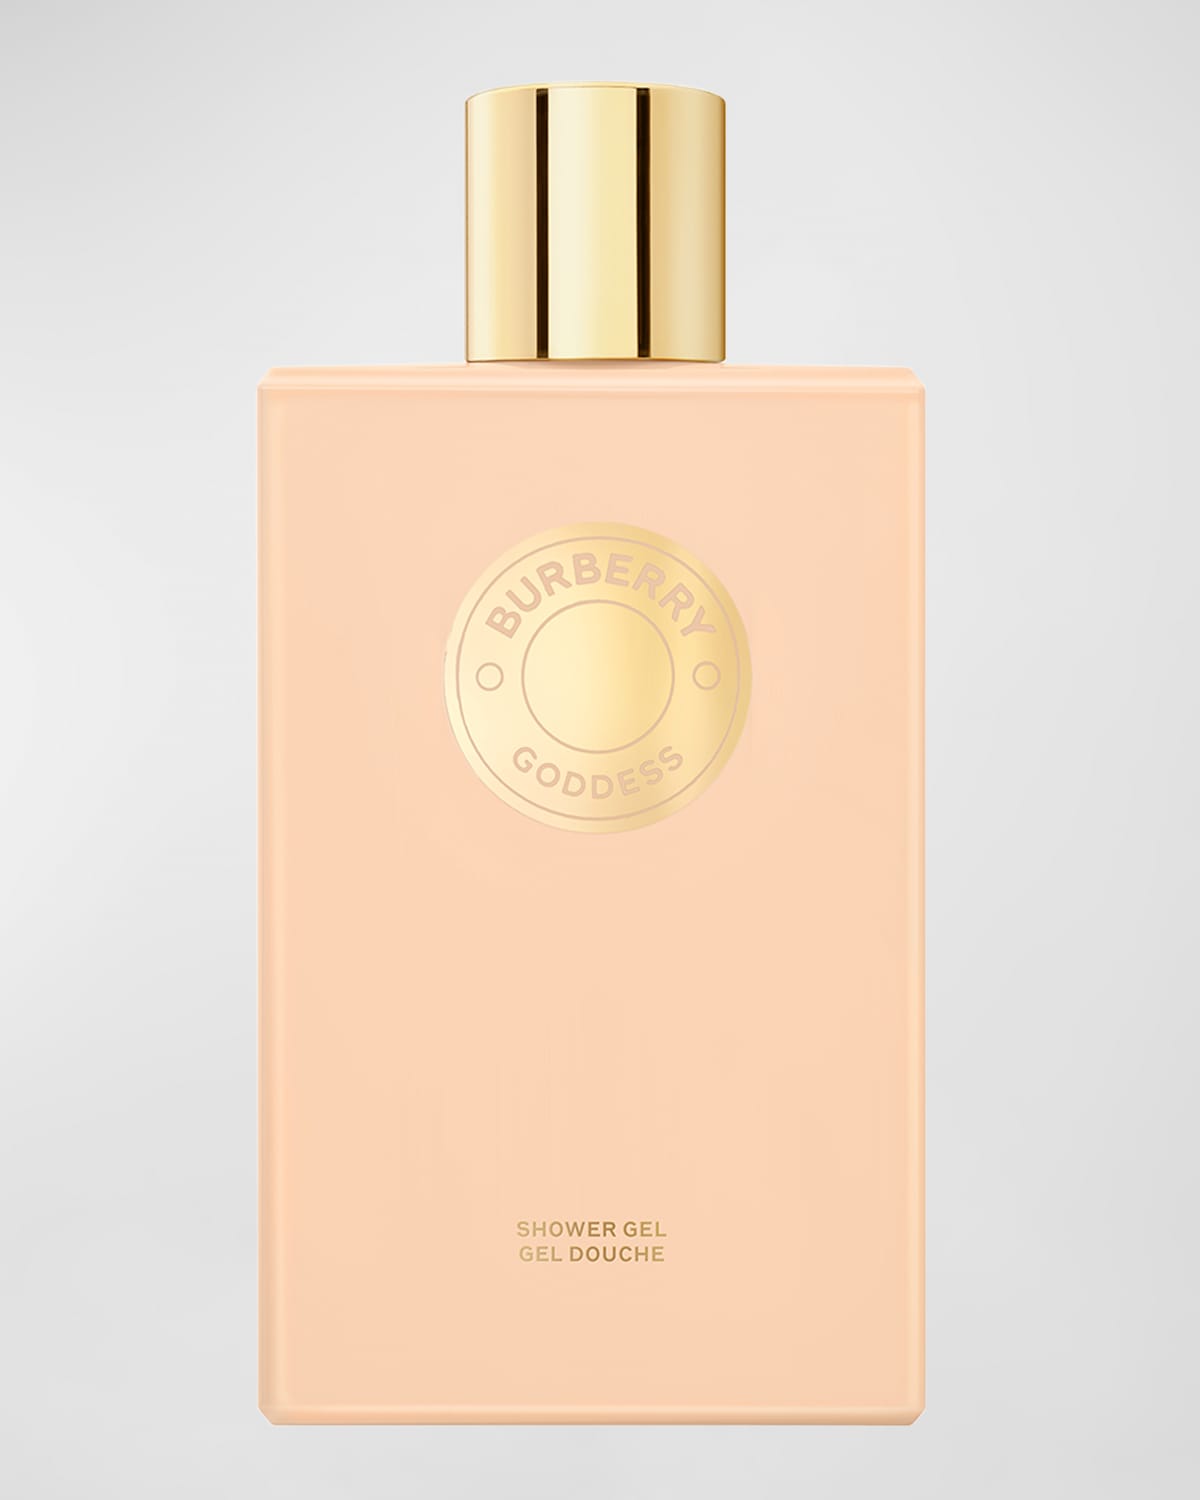 Goddess Eau de Parfum Shower Gel, 6.7 oz.